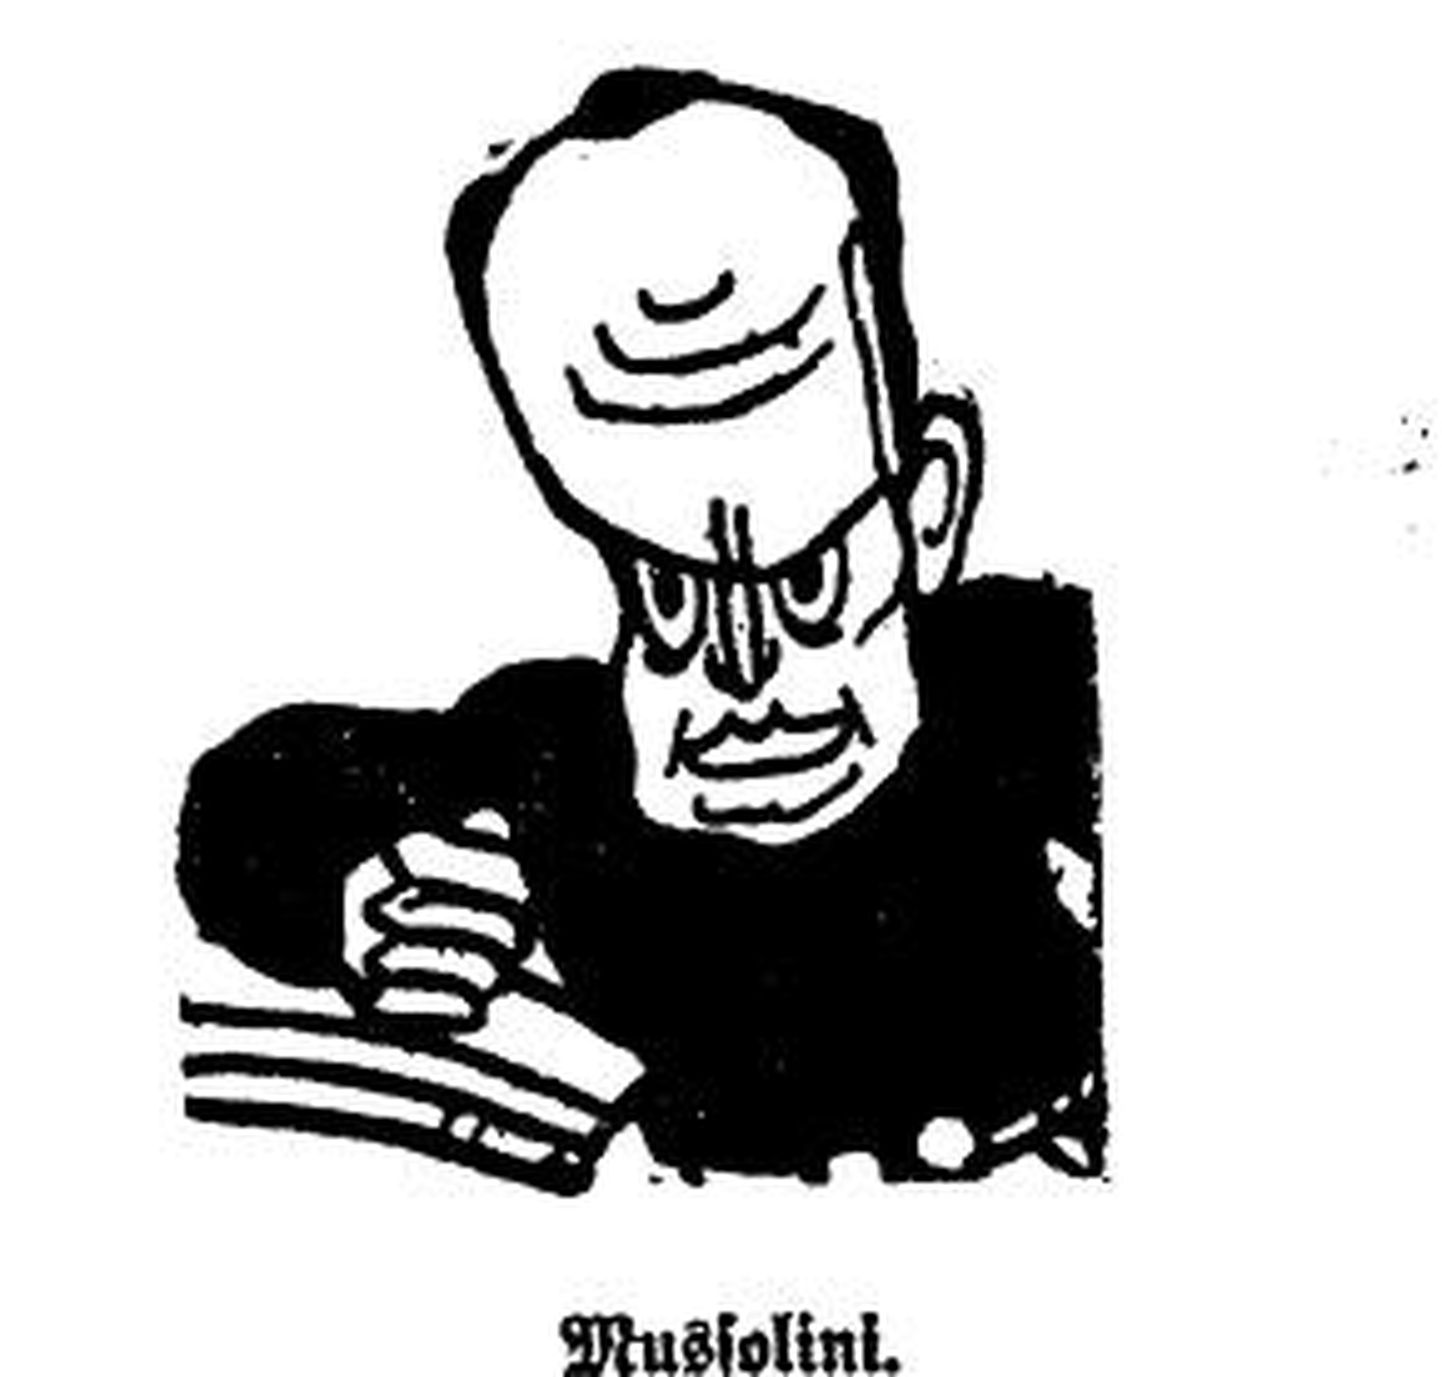 Mussolini. Illustratsioon 29. oktoobril 1930 ilmunud Postimehest.